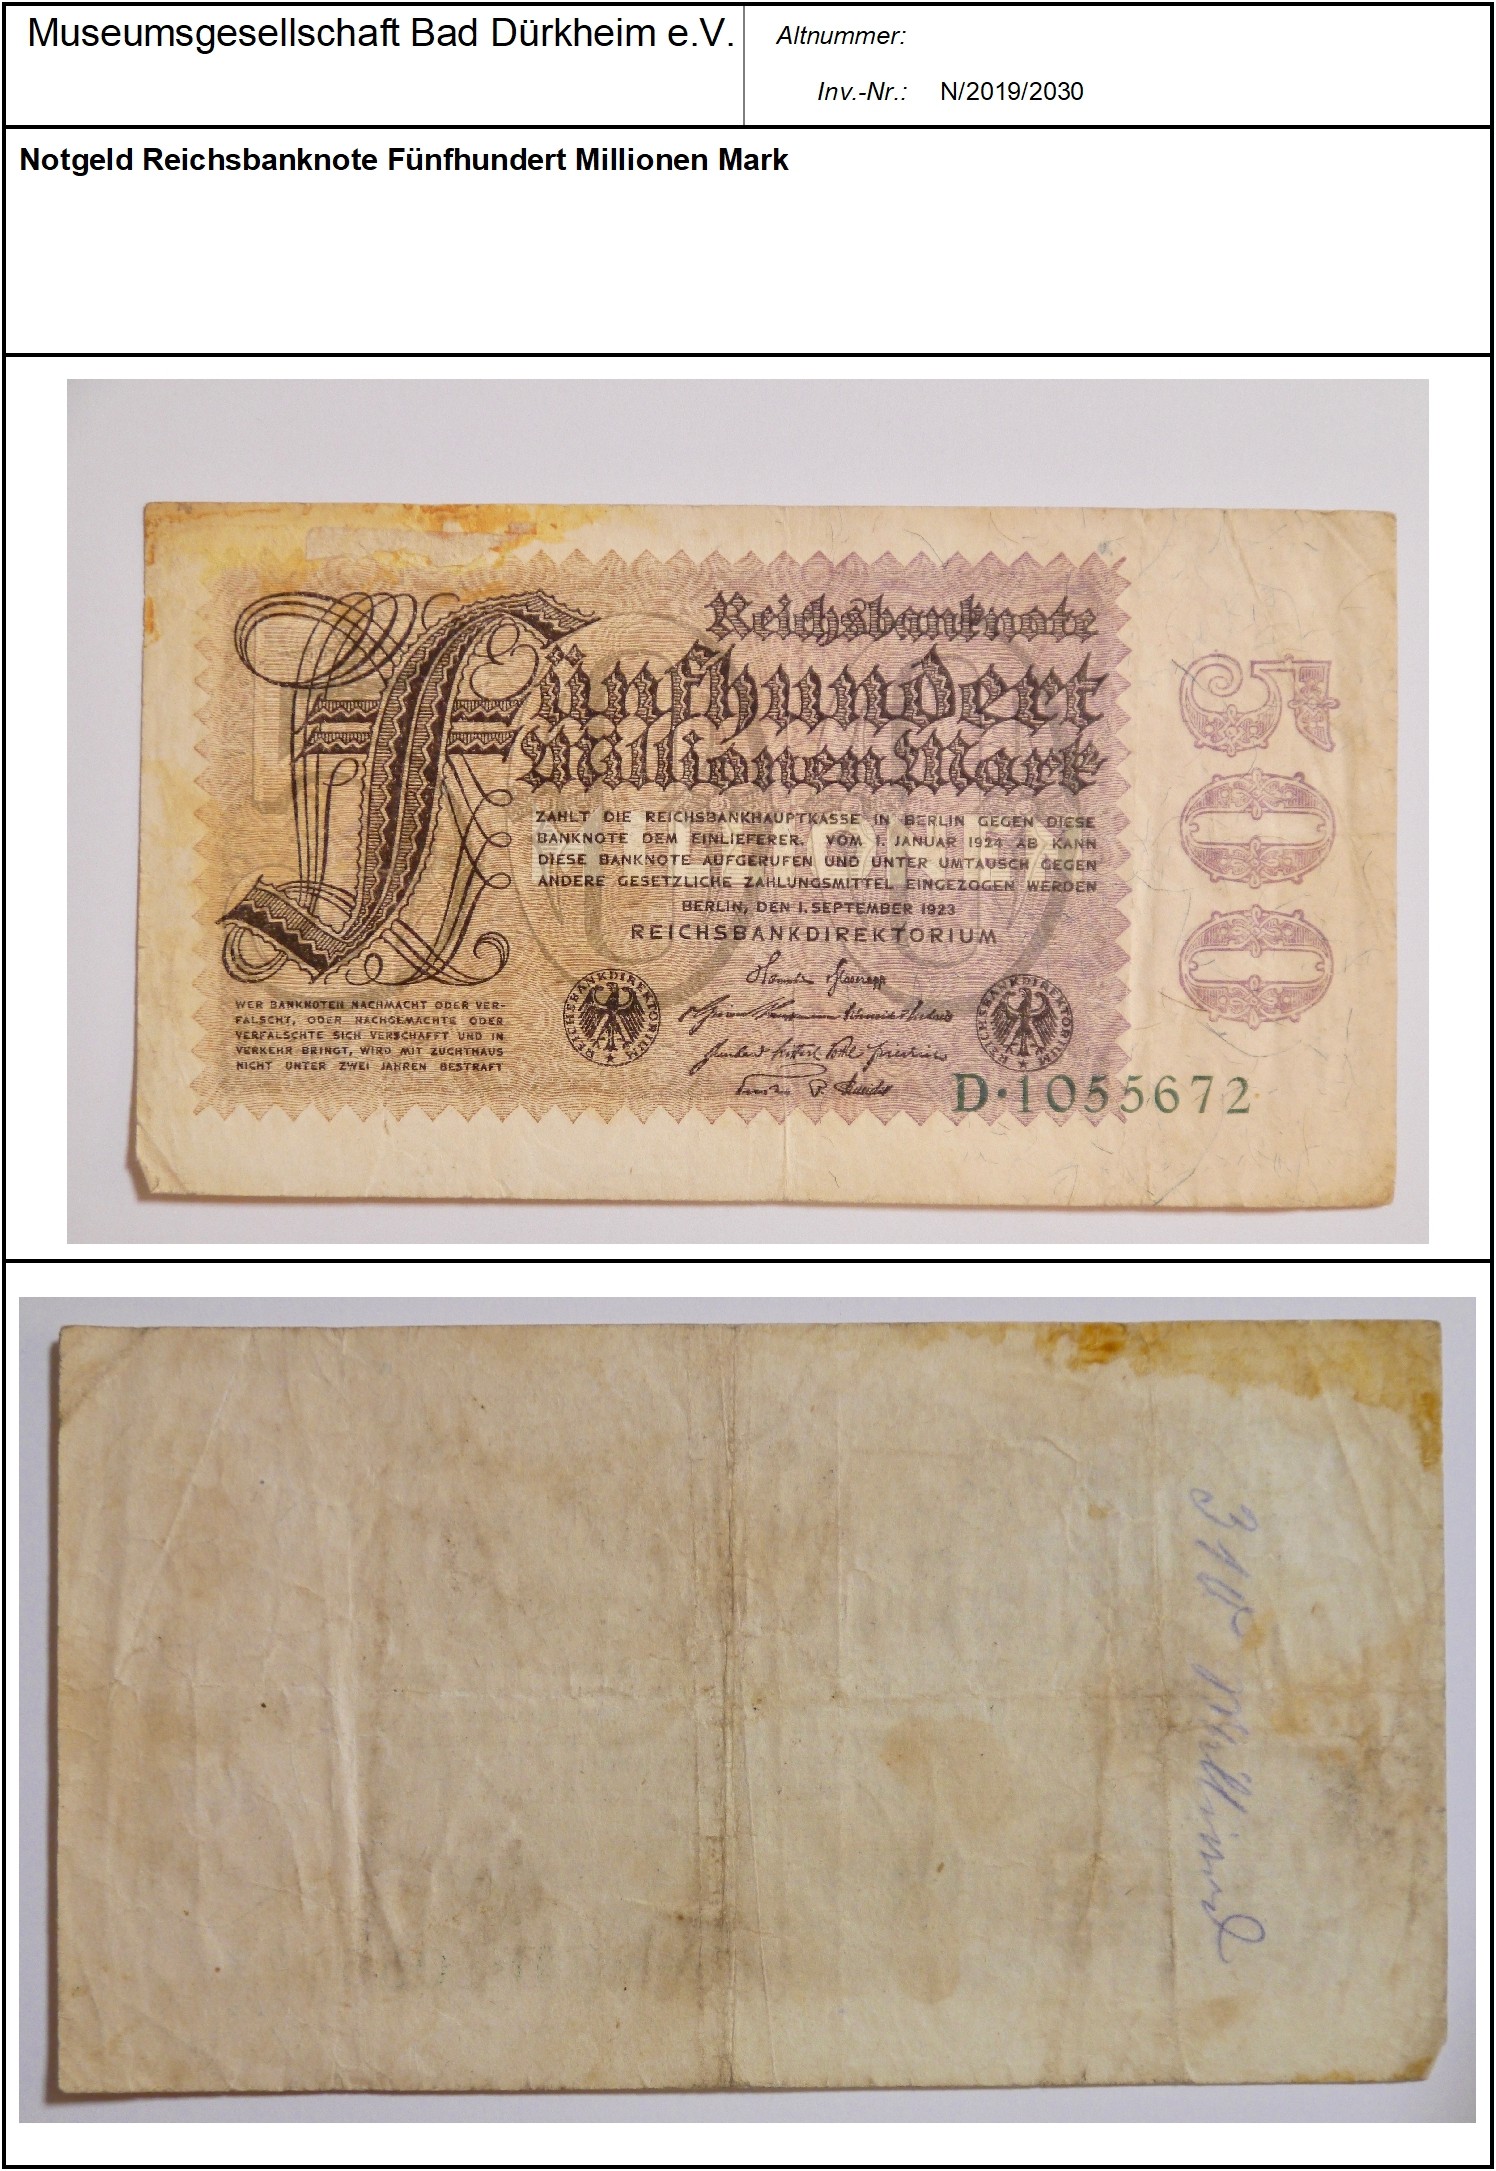 Notgeld Reichsbanknote Fünfhundert Millionen Mark
Serien-Nummer: D*1055672 (Museumsgesellschaft Bad Dürkheim e.V. CC BY-NC-SA)